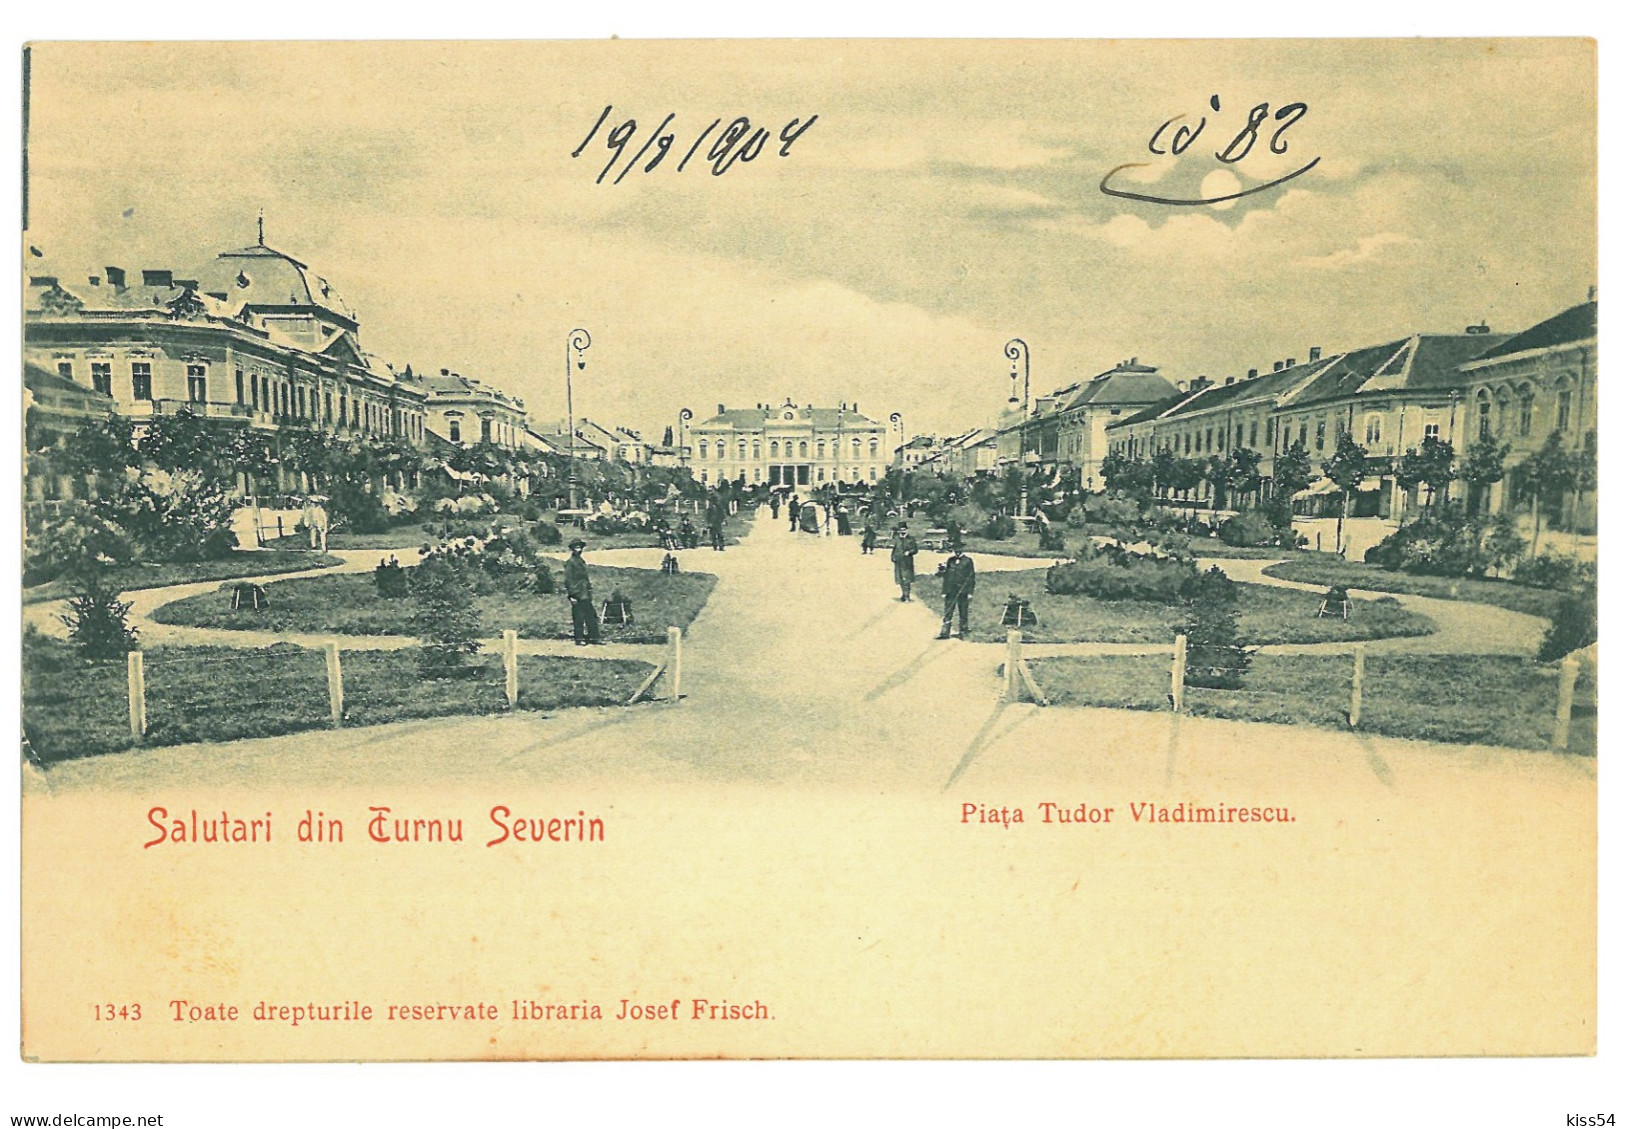 RO 999 - 24022 TURNU-SEVERIN, Market, Park, Litho, Romania - Old Postcard - Unused - Roemenië